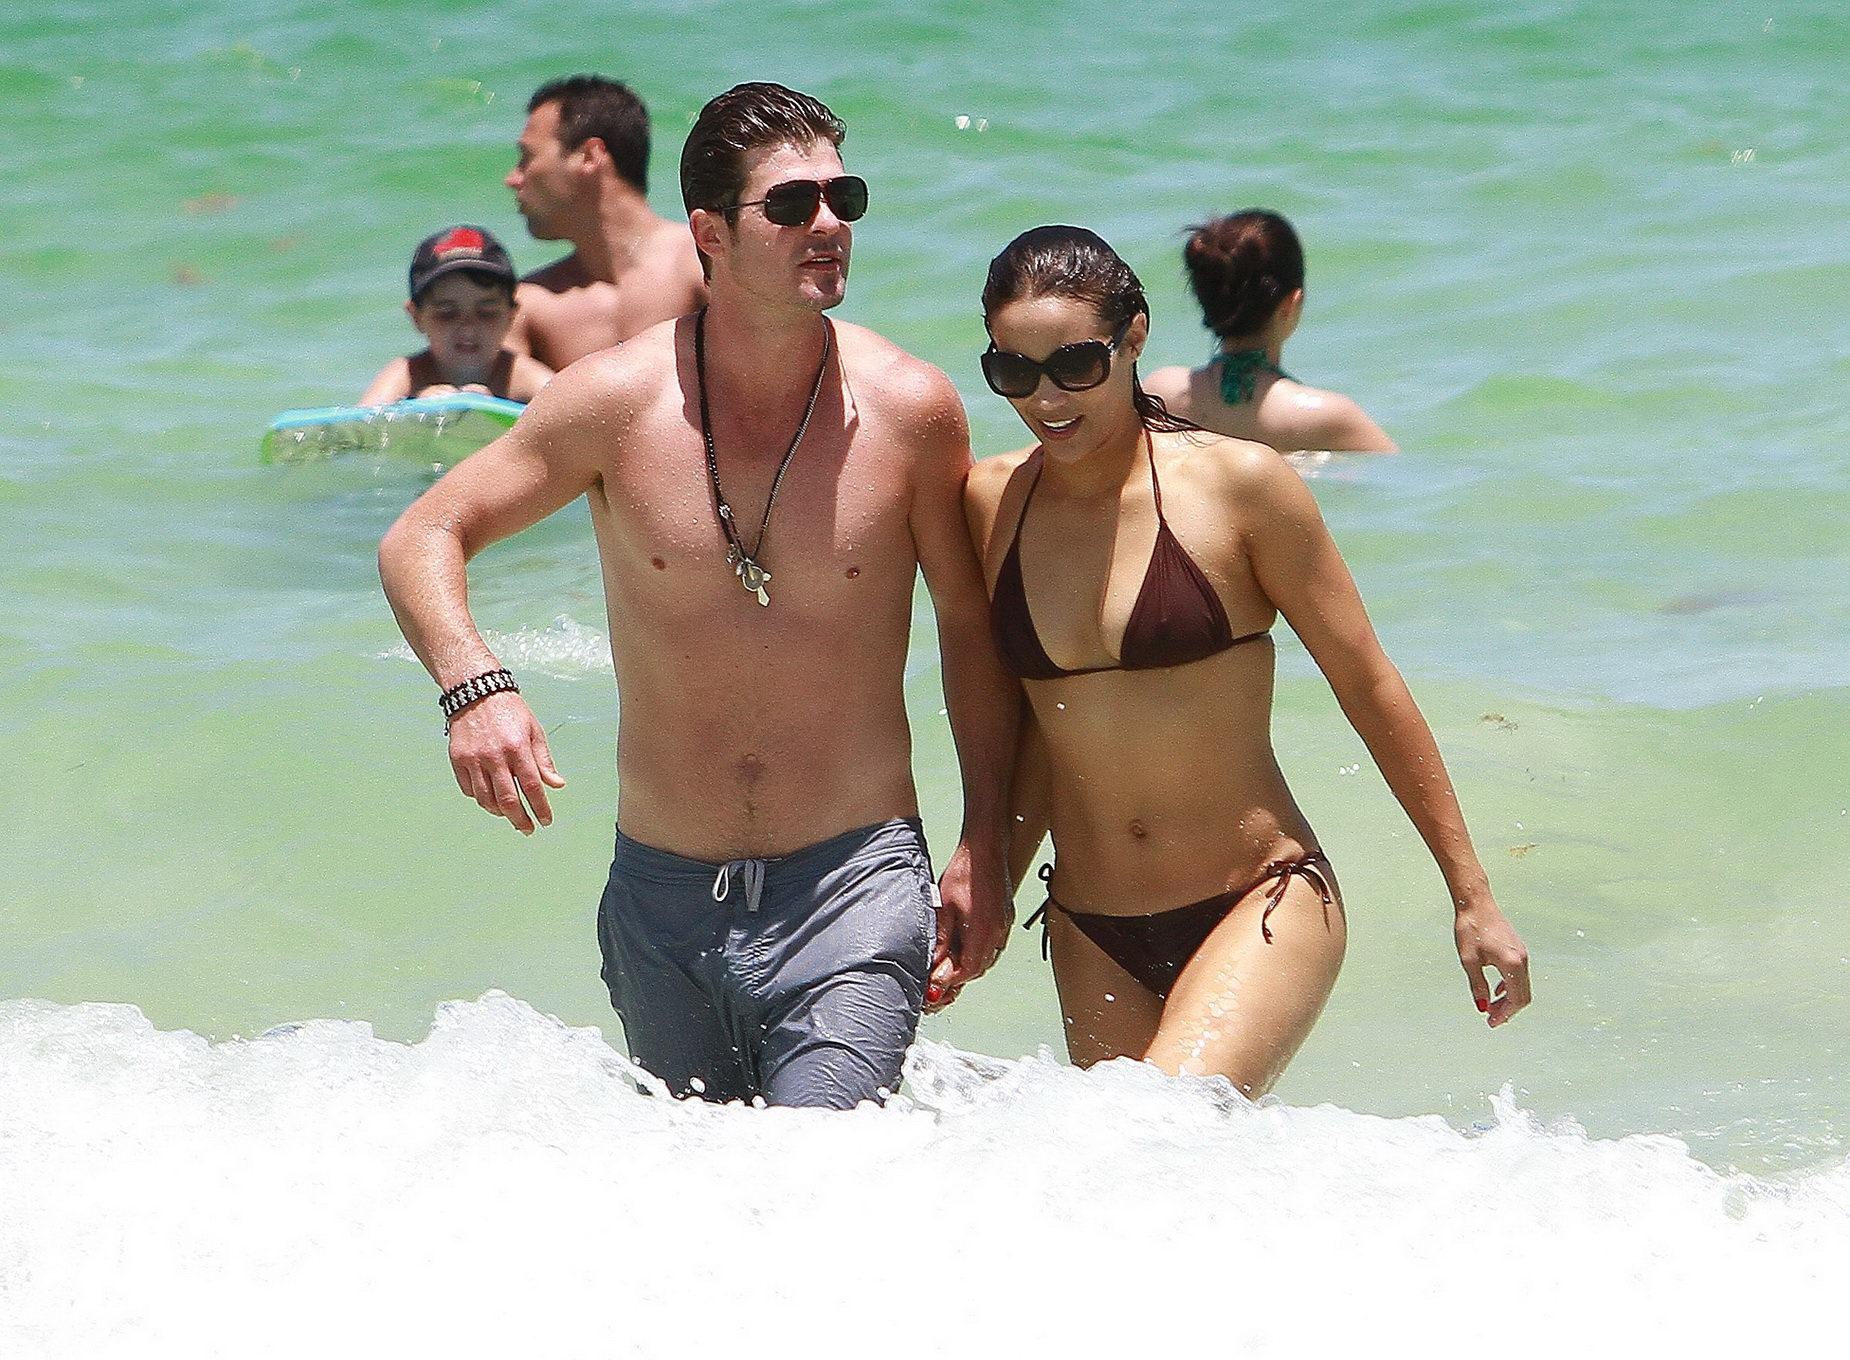 Paula patton muestra pokies llevando un escaso bikini mojado en la playa de miami
 #75296531